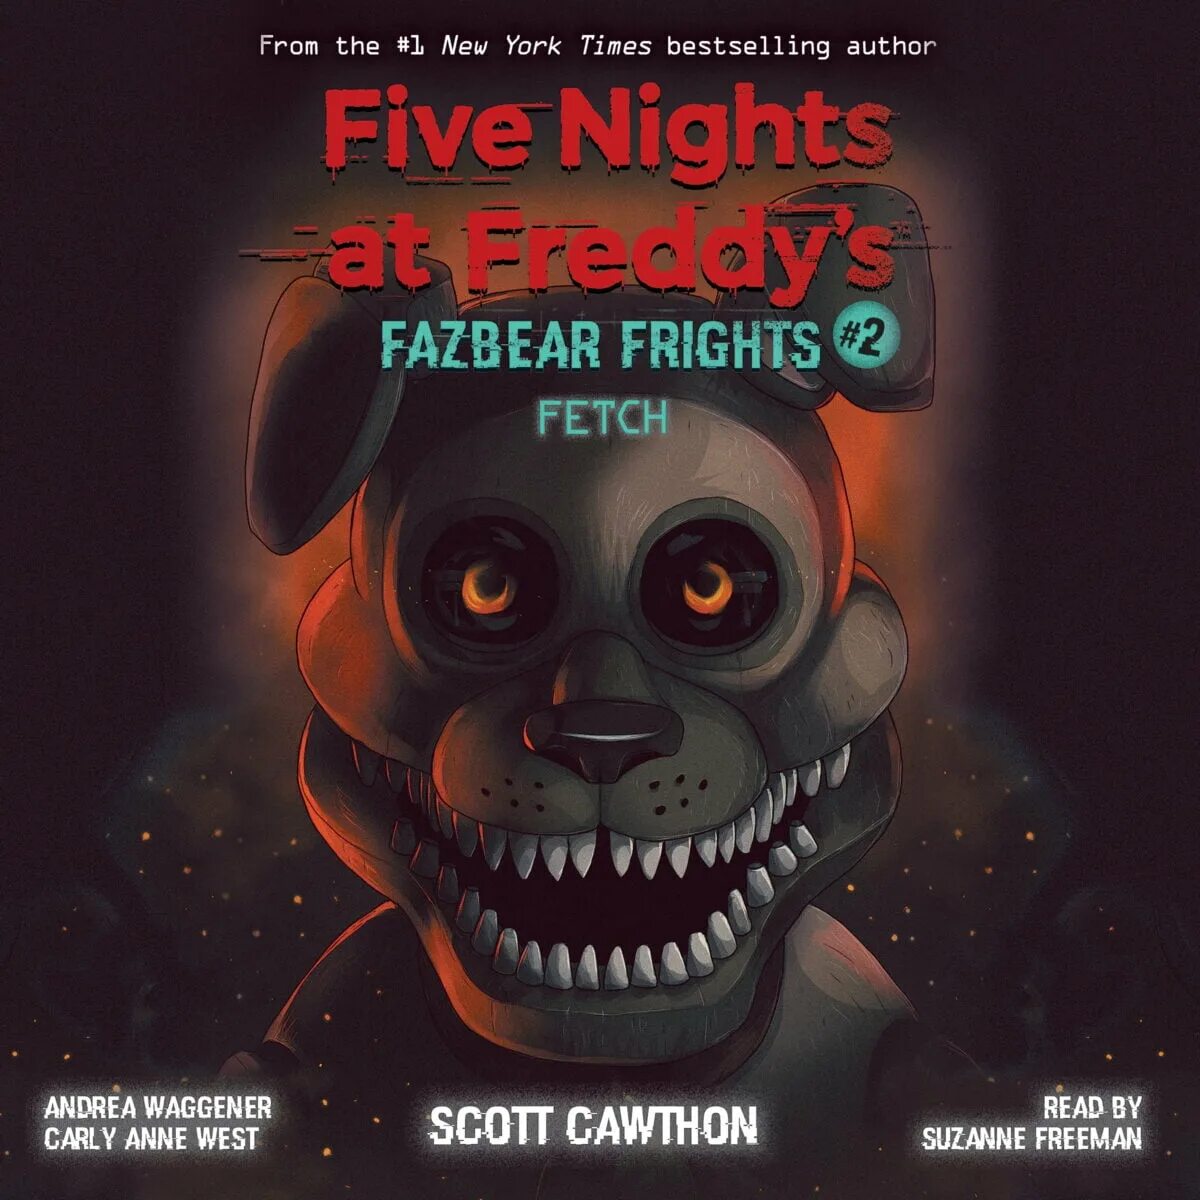 Книги фнаф ужасы фазбера. Книга Fazbear's Fright. Five Nights at Freddy s книга Fazbear Fright. Fazbear Frights книги. Книга Фредди Скотт Коутон.